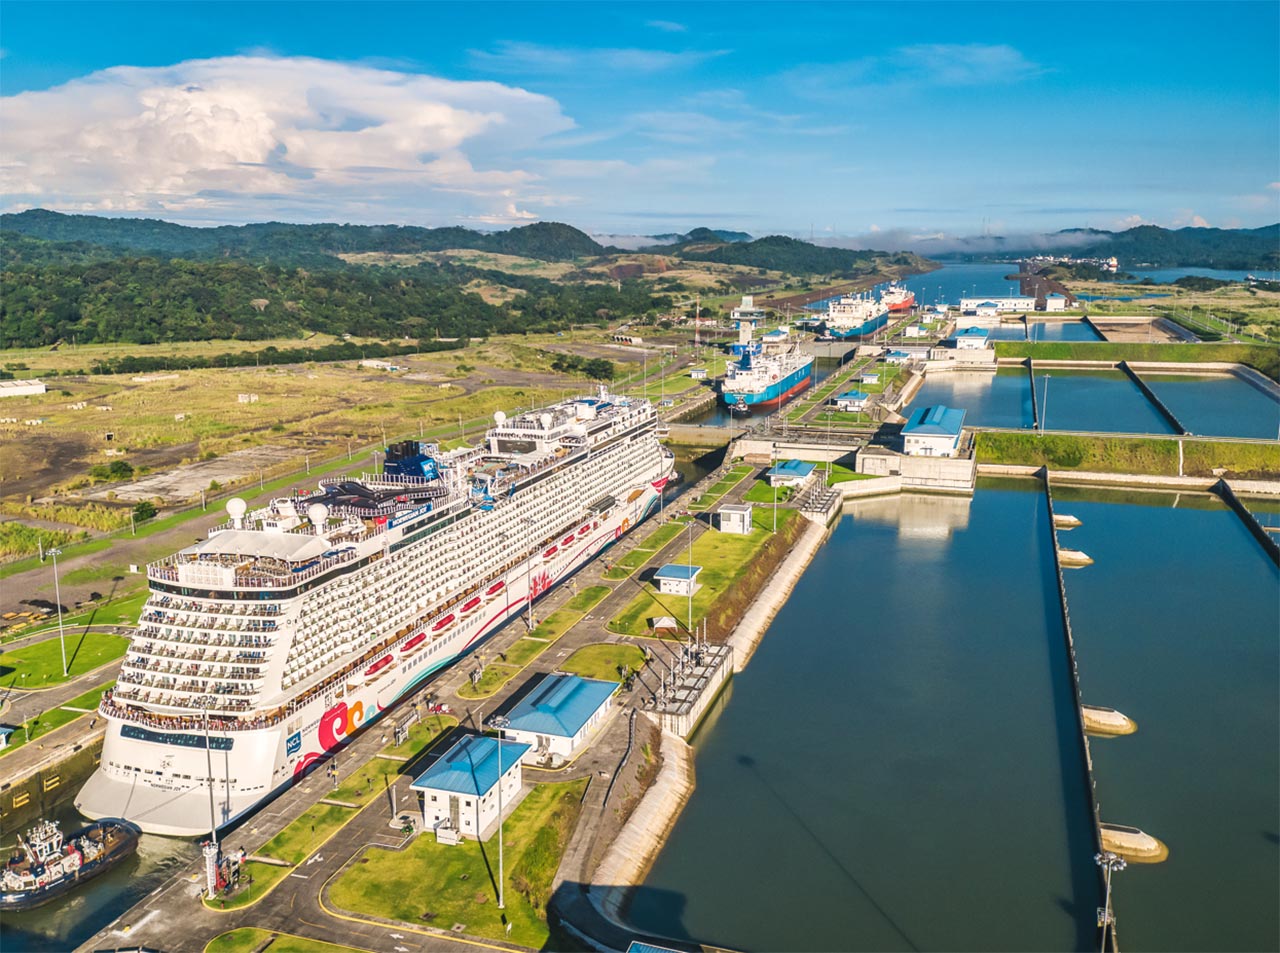 Canal ampliado cumple 8 años de crecimiento, retos y avances - Canal de Panamá - Revista El Faro